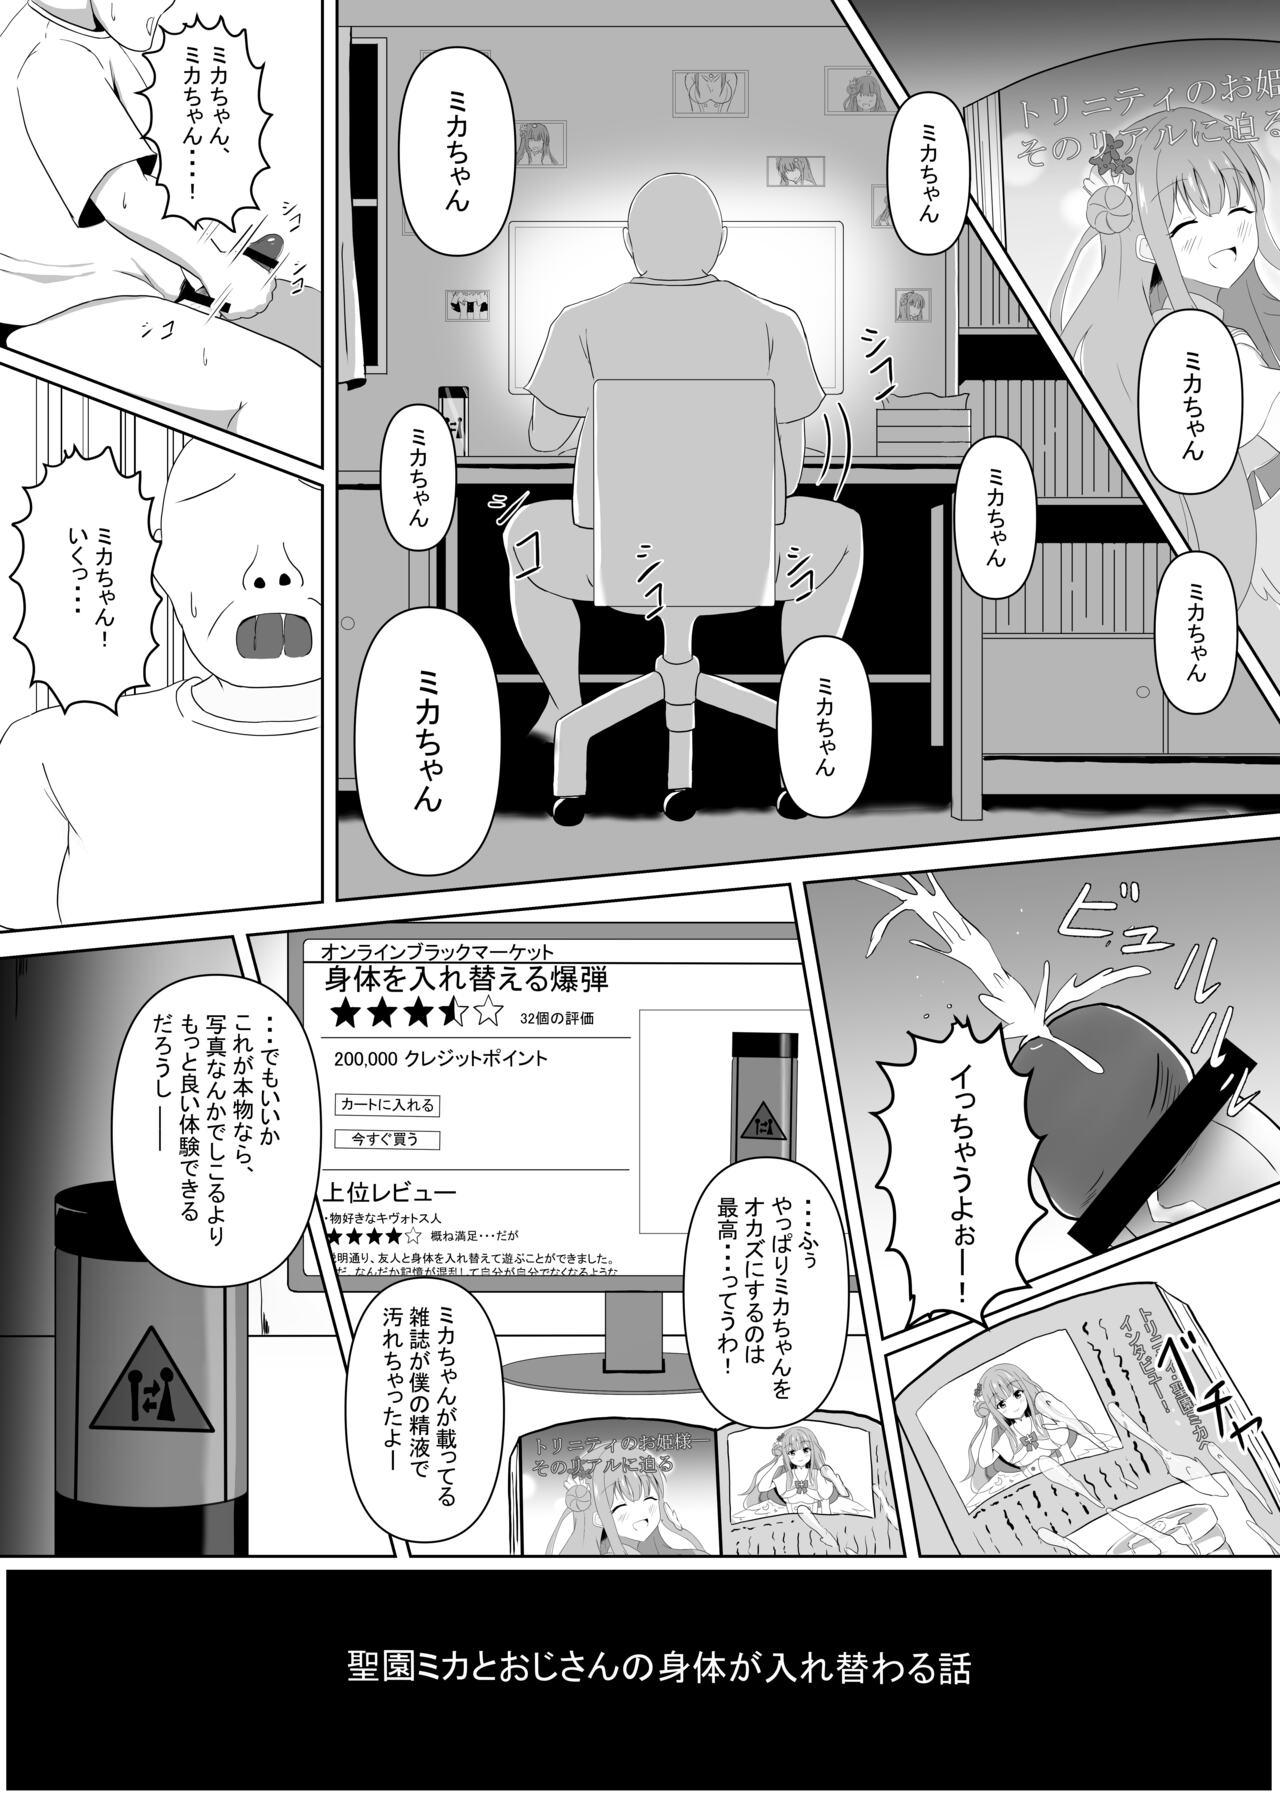 Dick Mika-chan no Tame ni, Onaru ne? - Blue archive Ladyboy - Picture 2